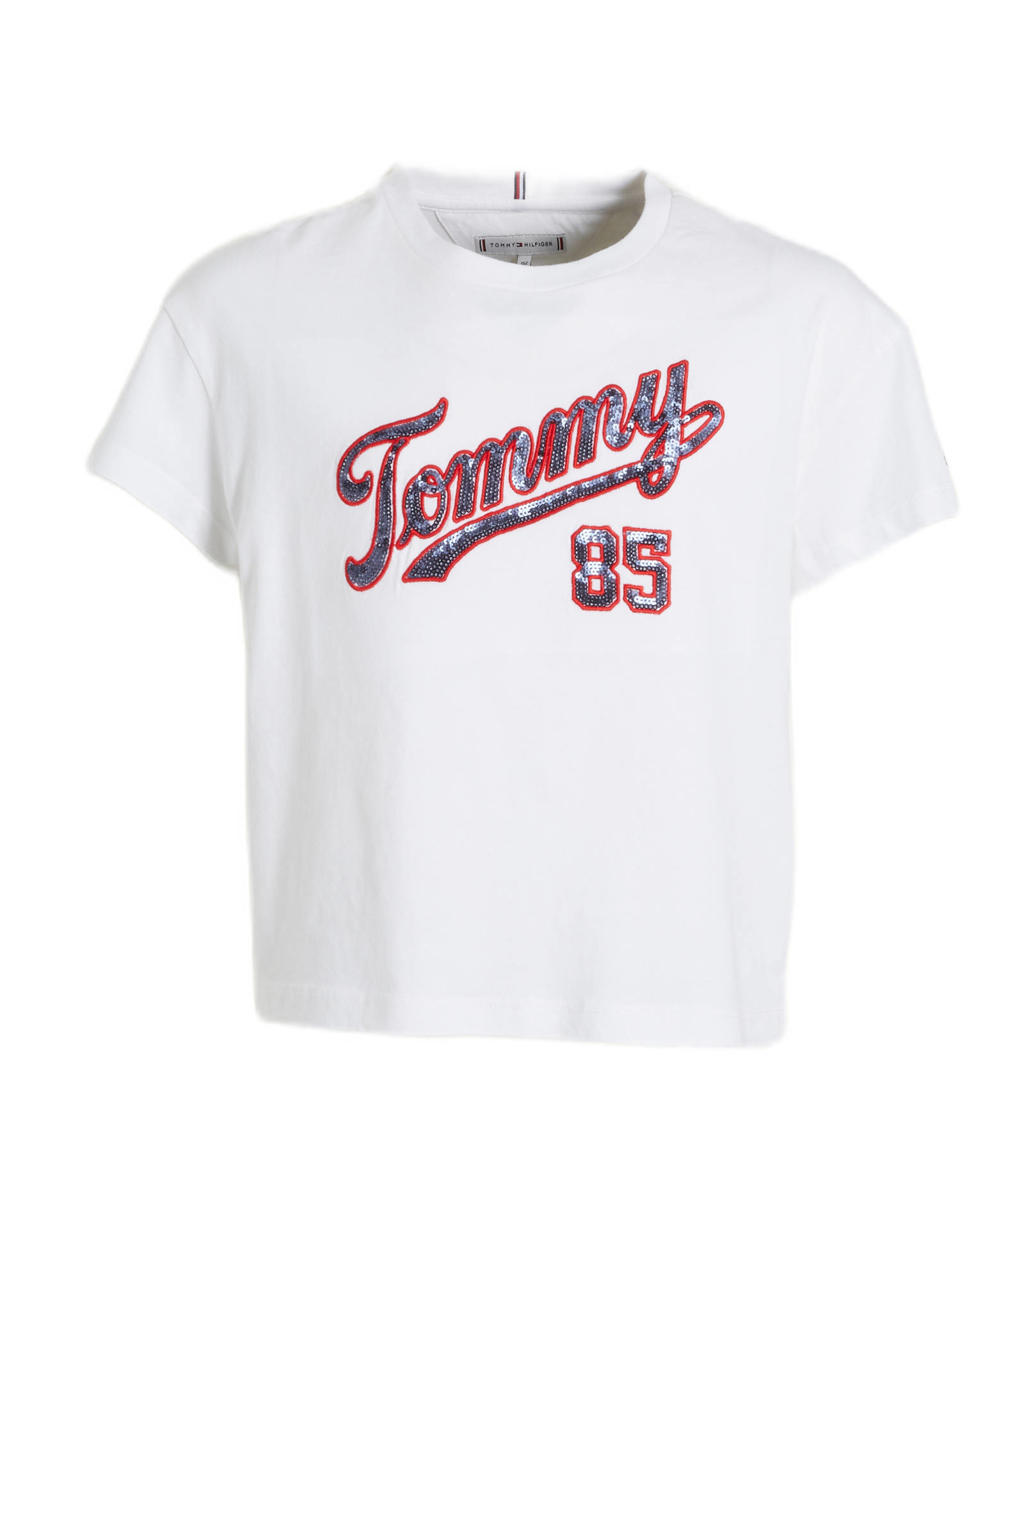 Witte meisjes Tommy Hilfiger T-shirt van biologisch katoen met korte mouwen, ronde hals en pailletten